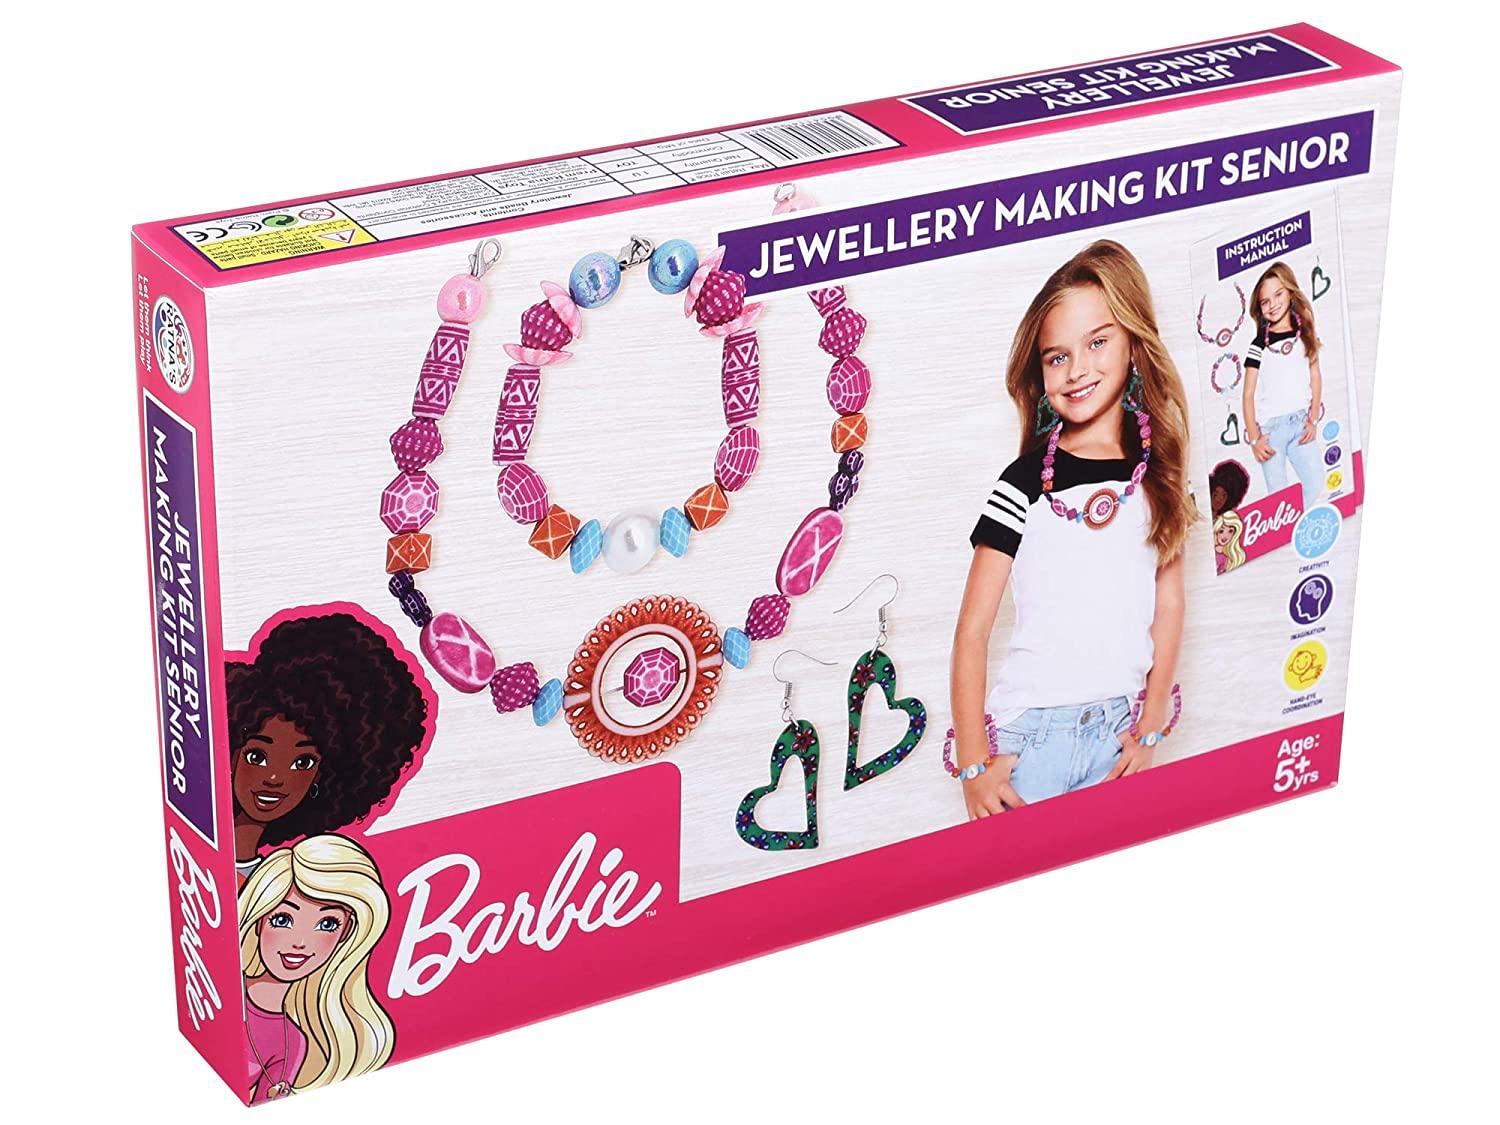 Barbie Jewellery Making Kit Senior